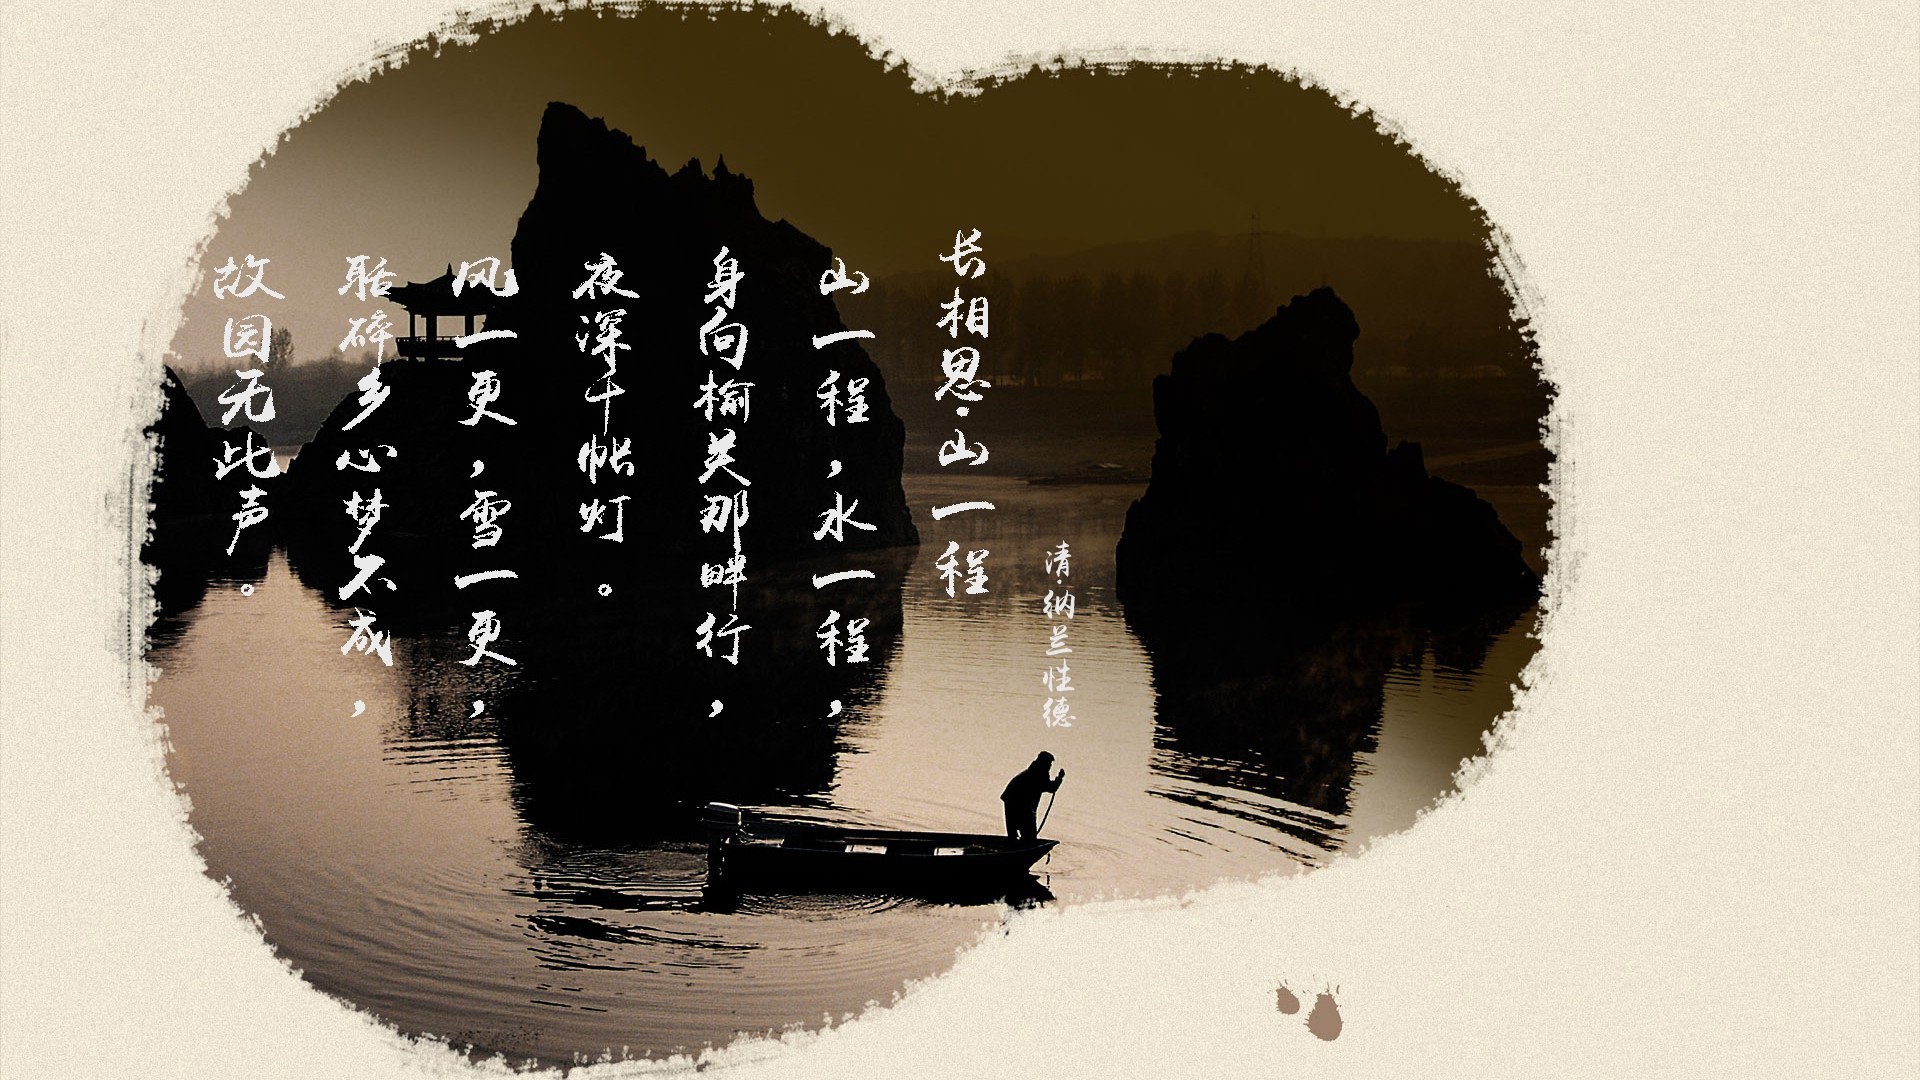 文字 诗词 中国风 纳兰性德 长相思山一程 文字控壁纸